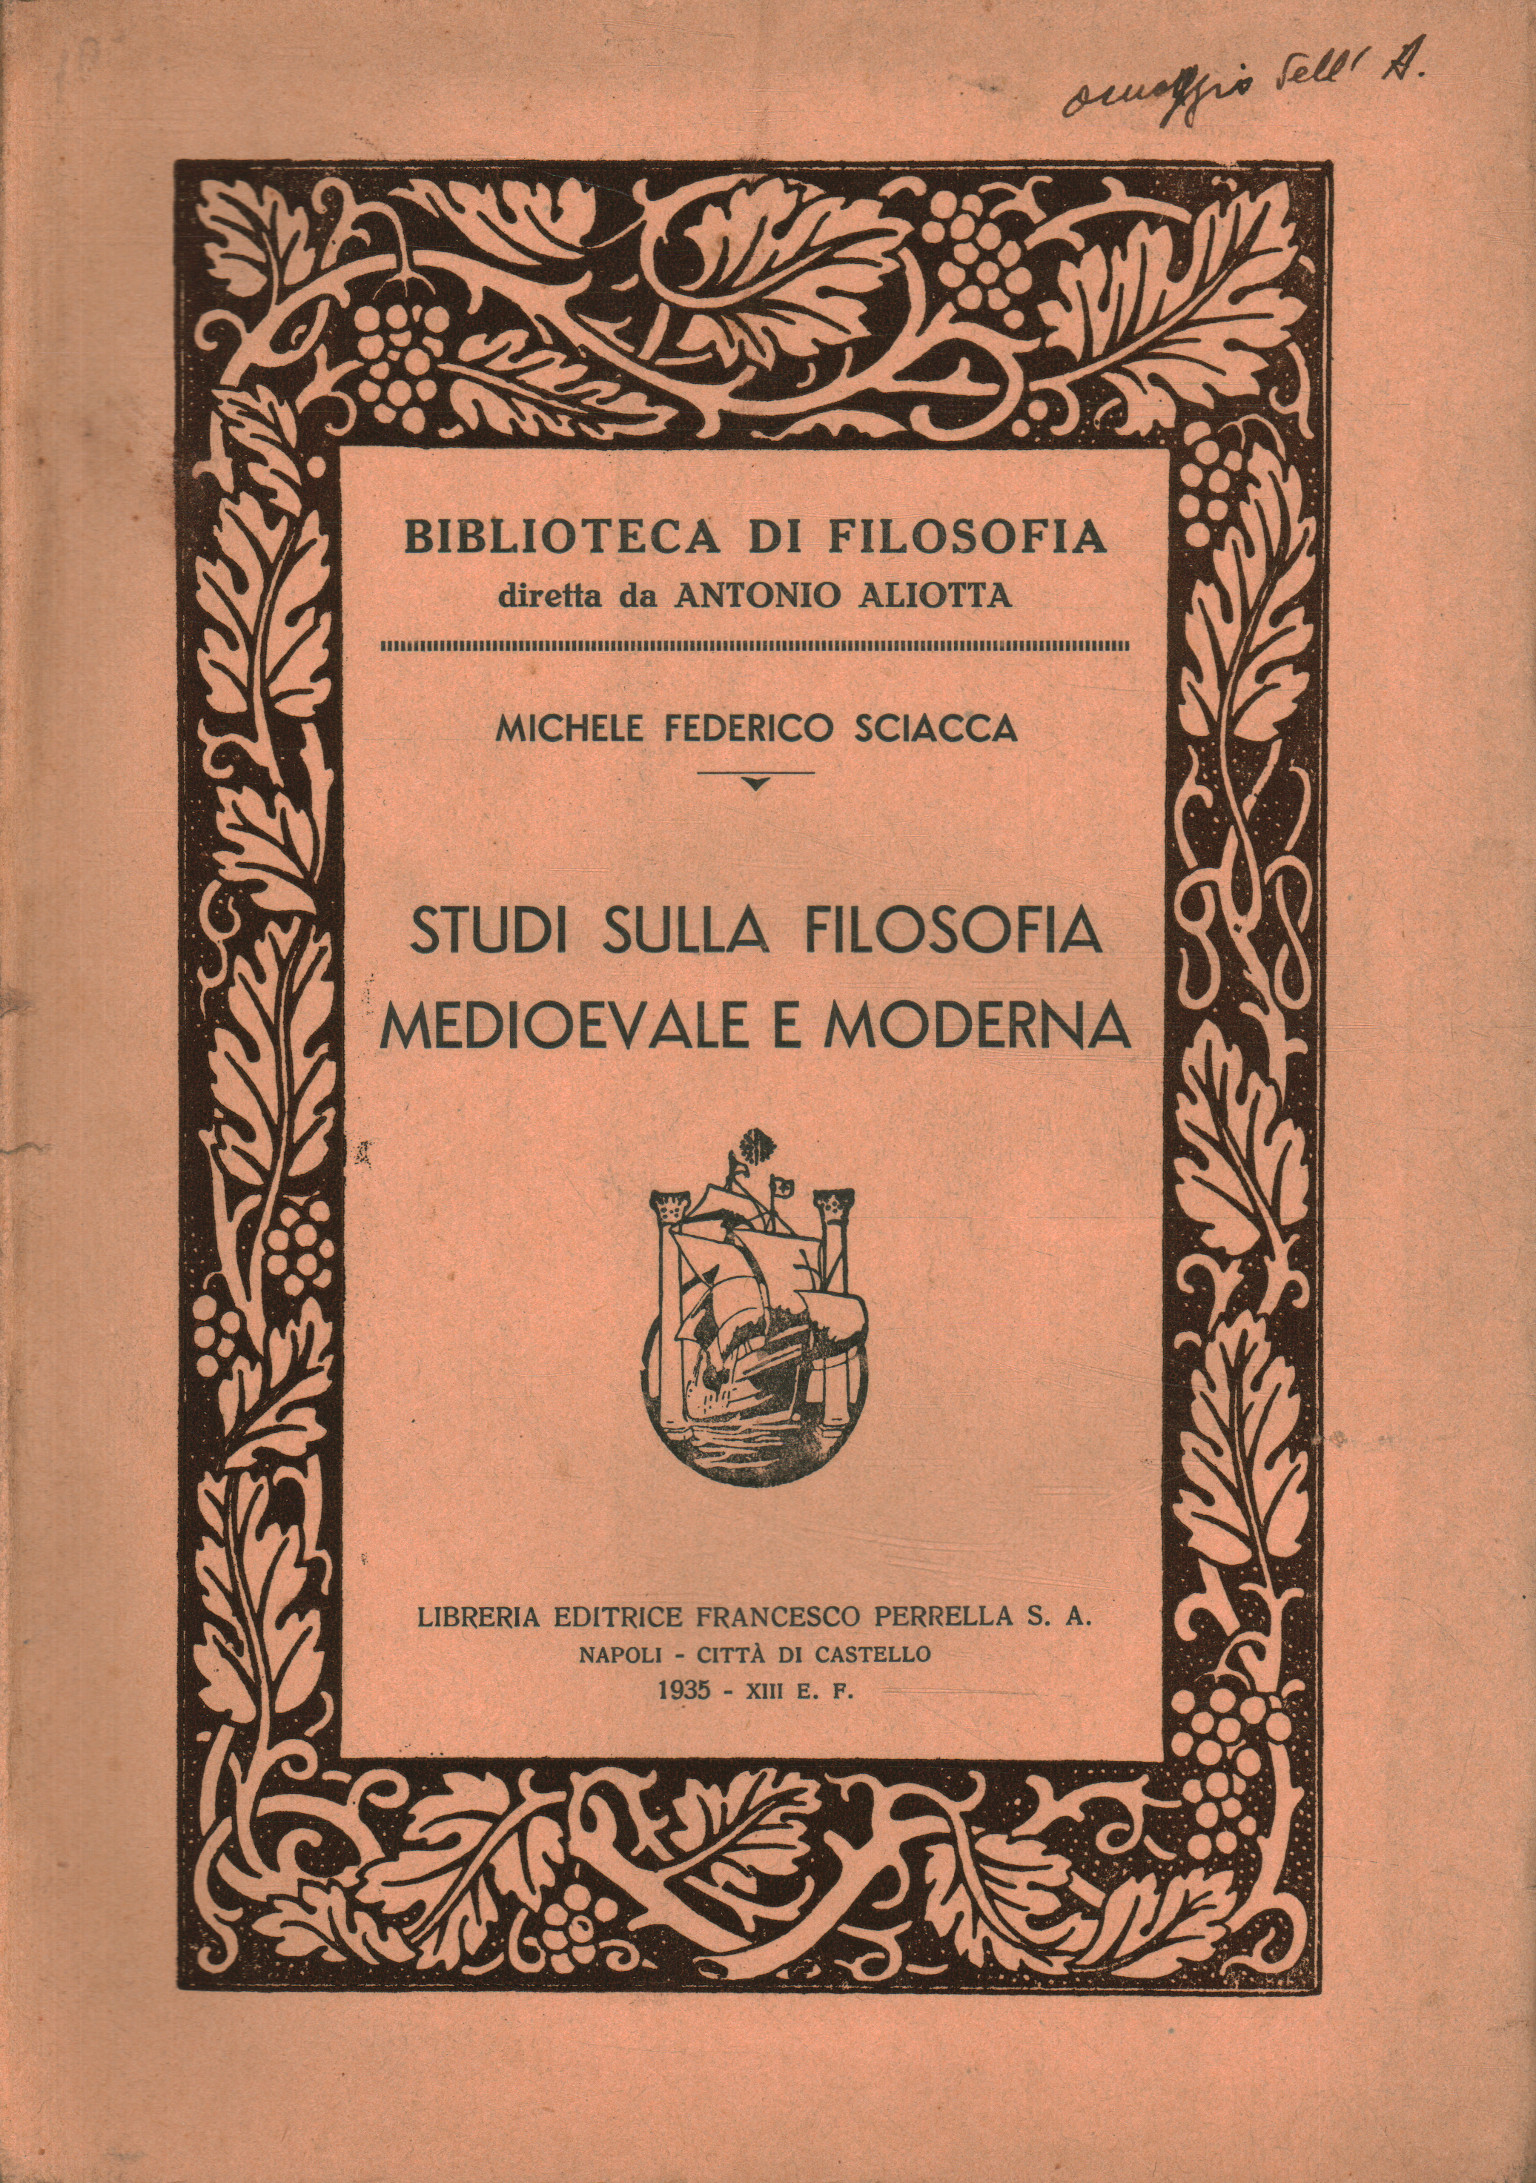 Études sur la philosophie médiévale et moderne